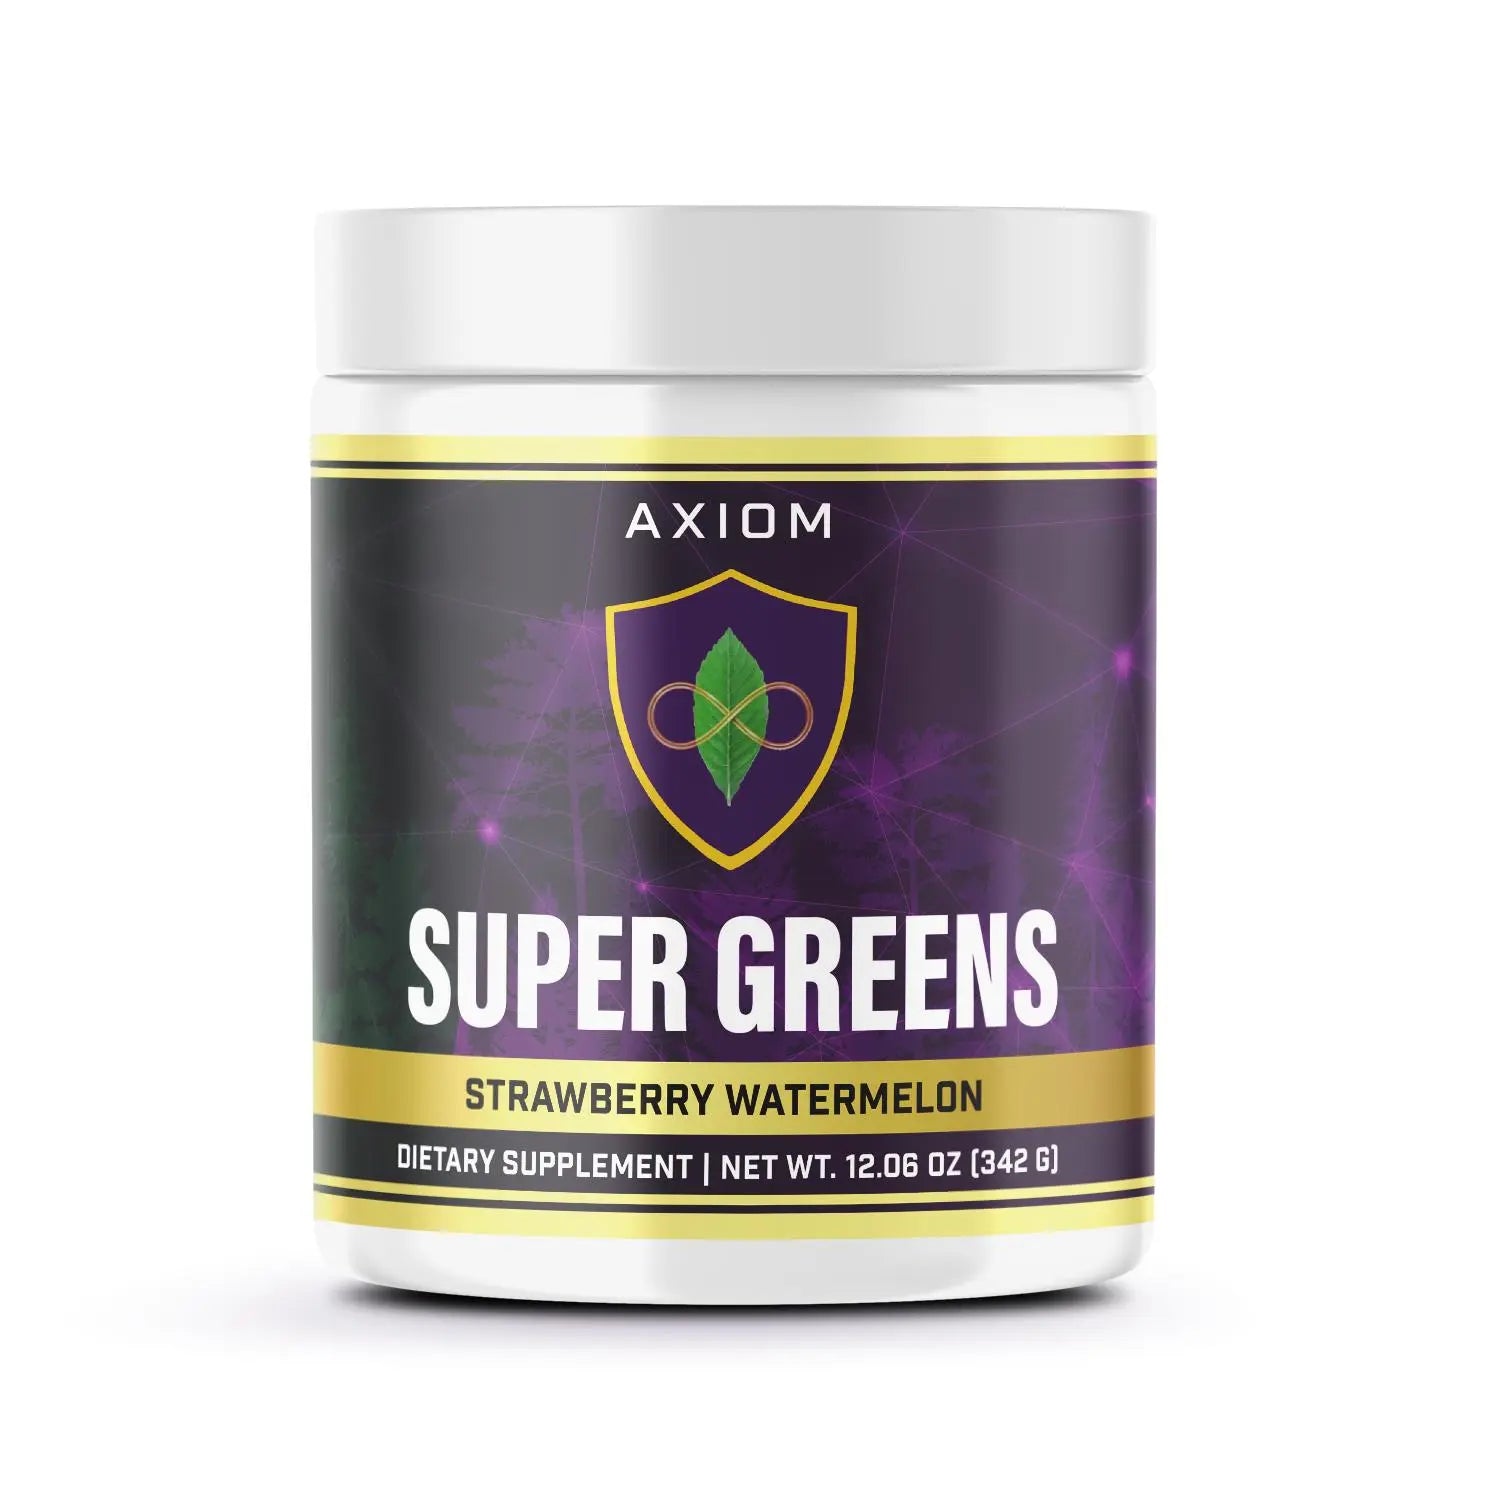 Super Greens Axiomsupplements